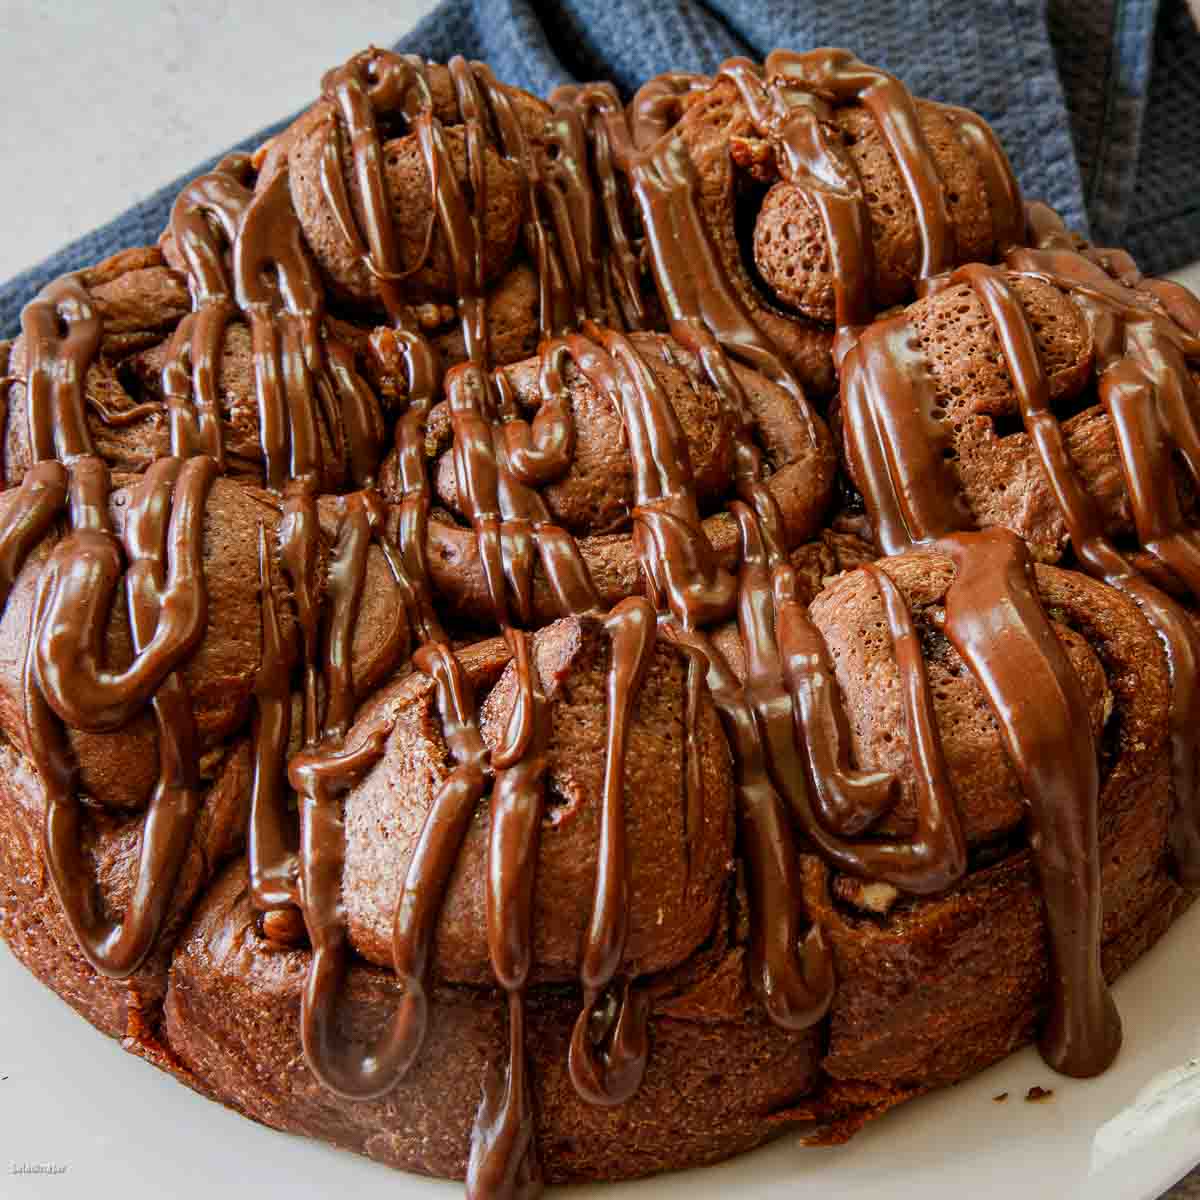 Coconut Cake - A Breadmaker Cake Recipe - Liana's Kitchen